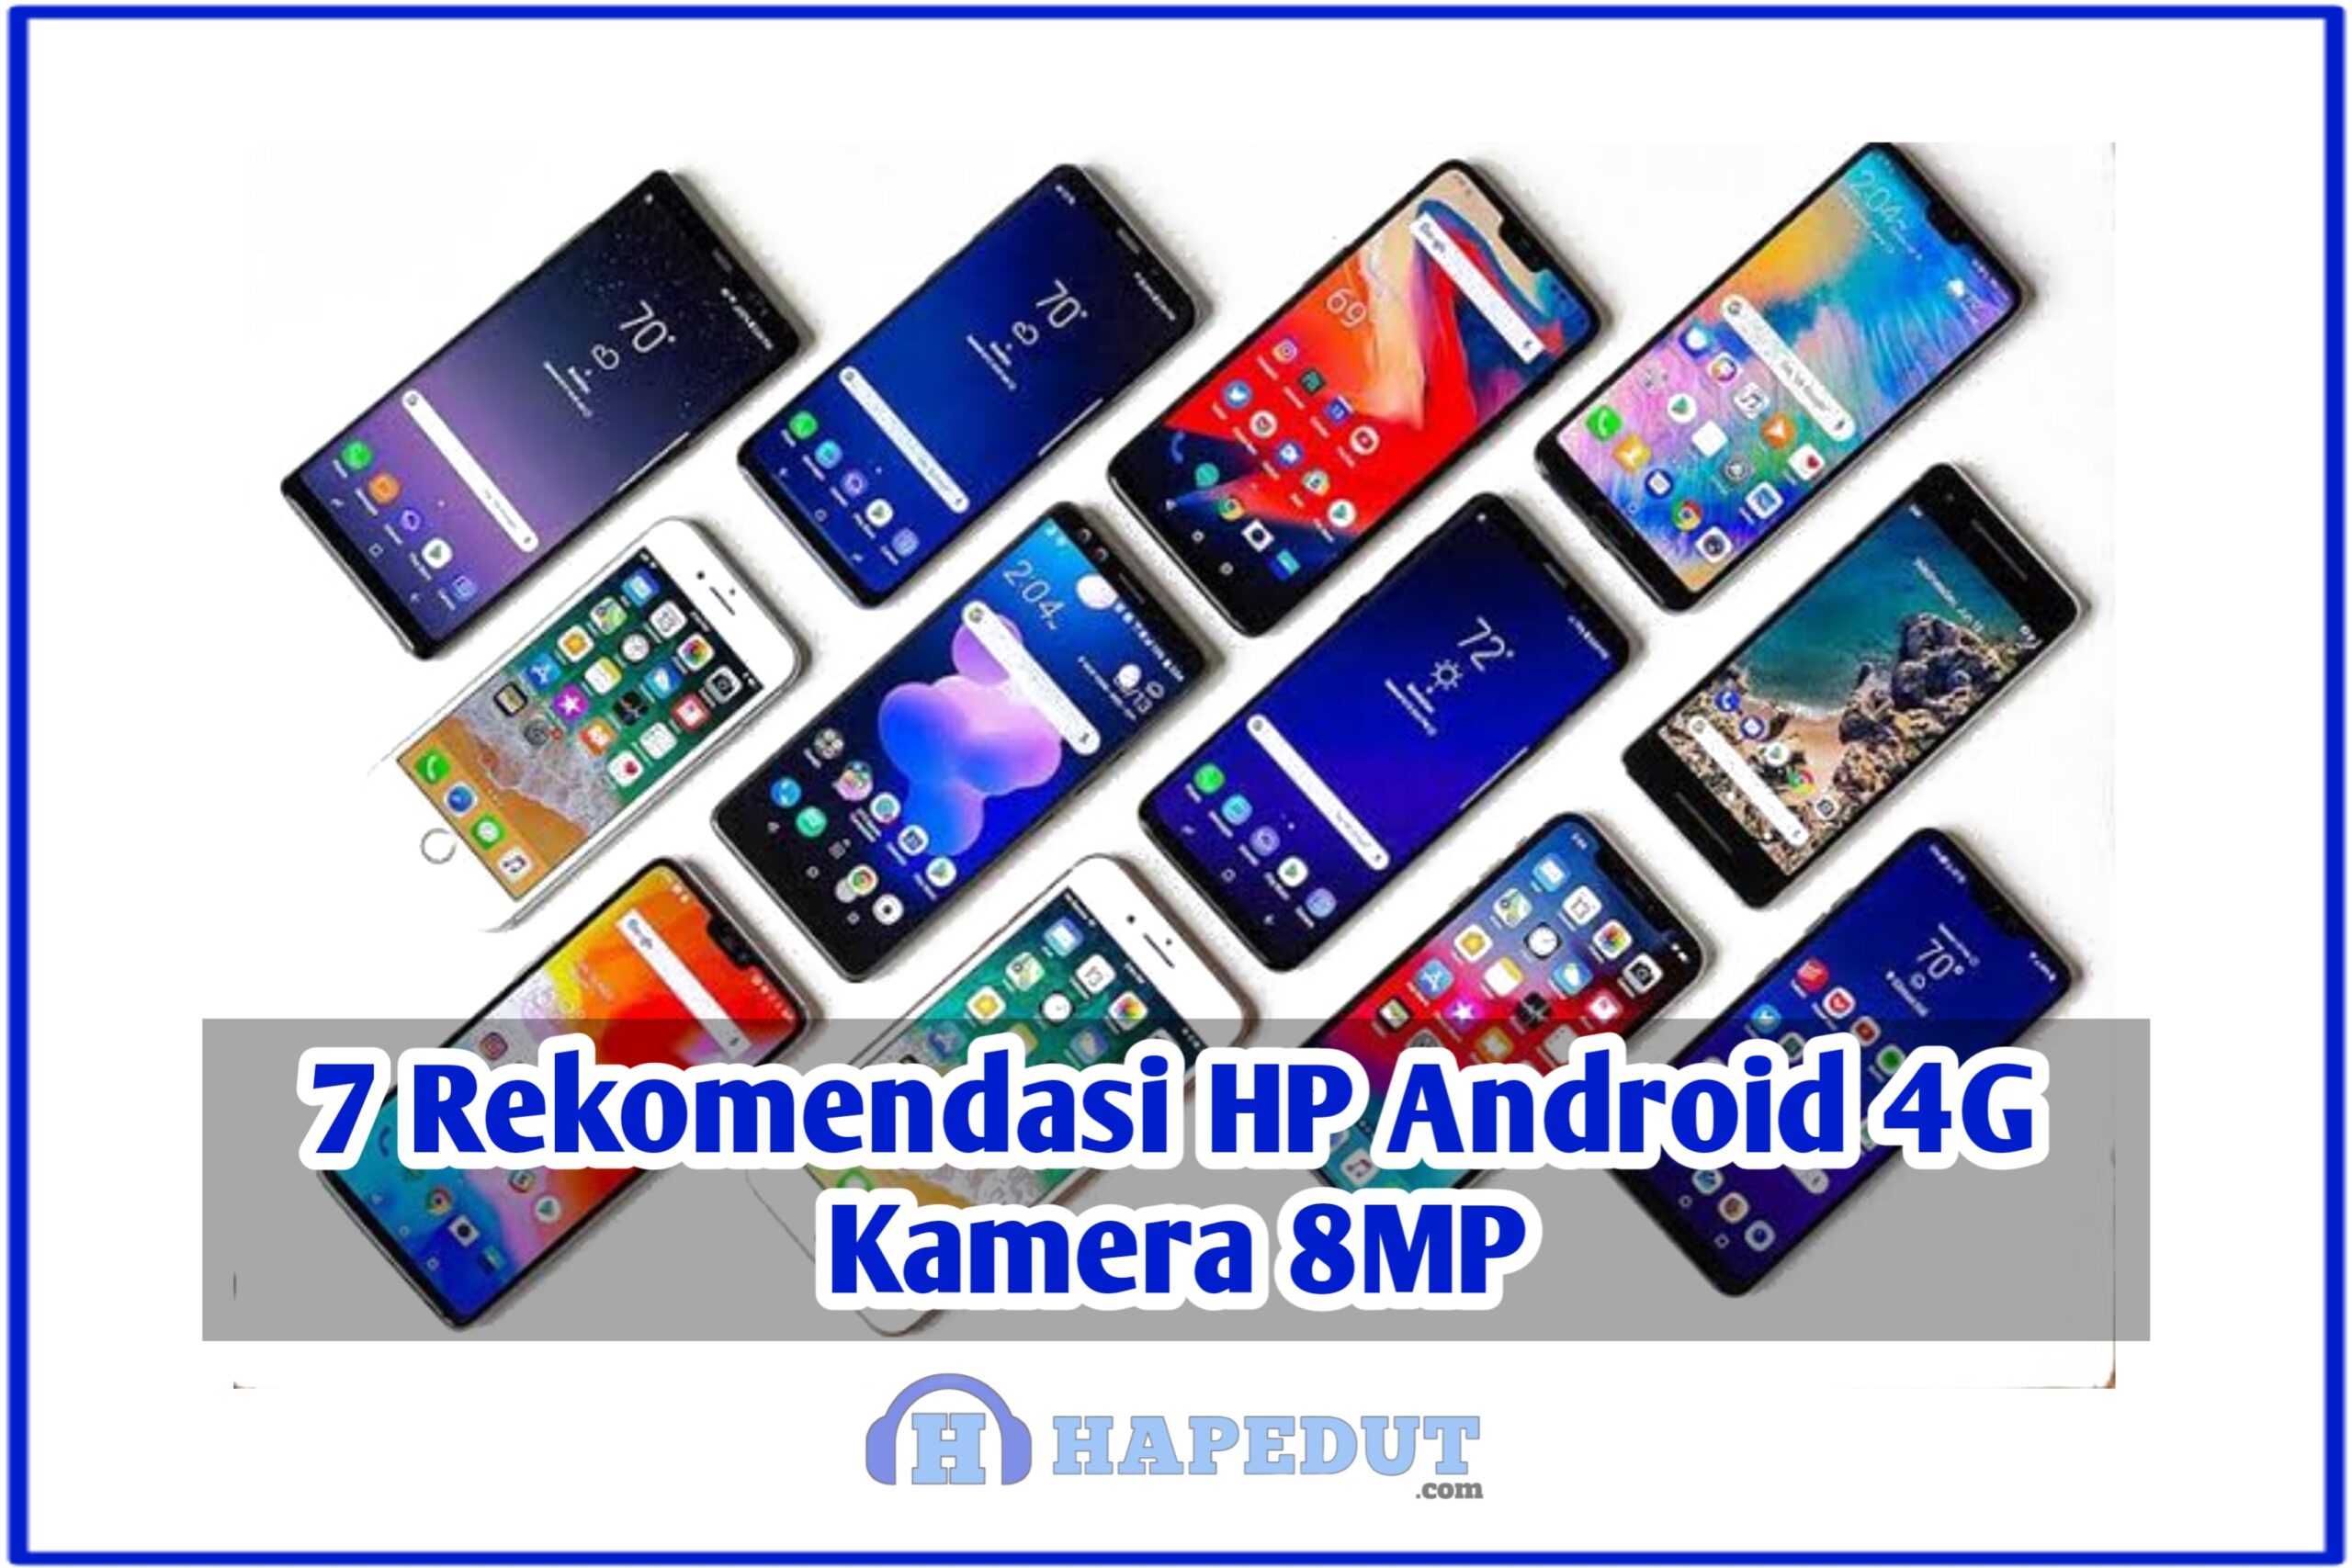 7 Rekomendasi HP Android 4G Kamera 8MP : Hapedut